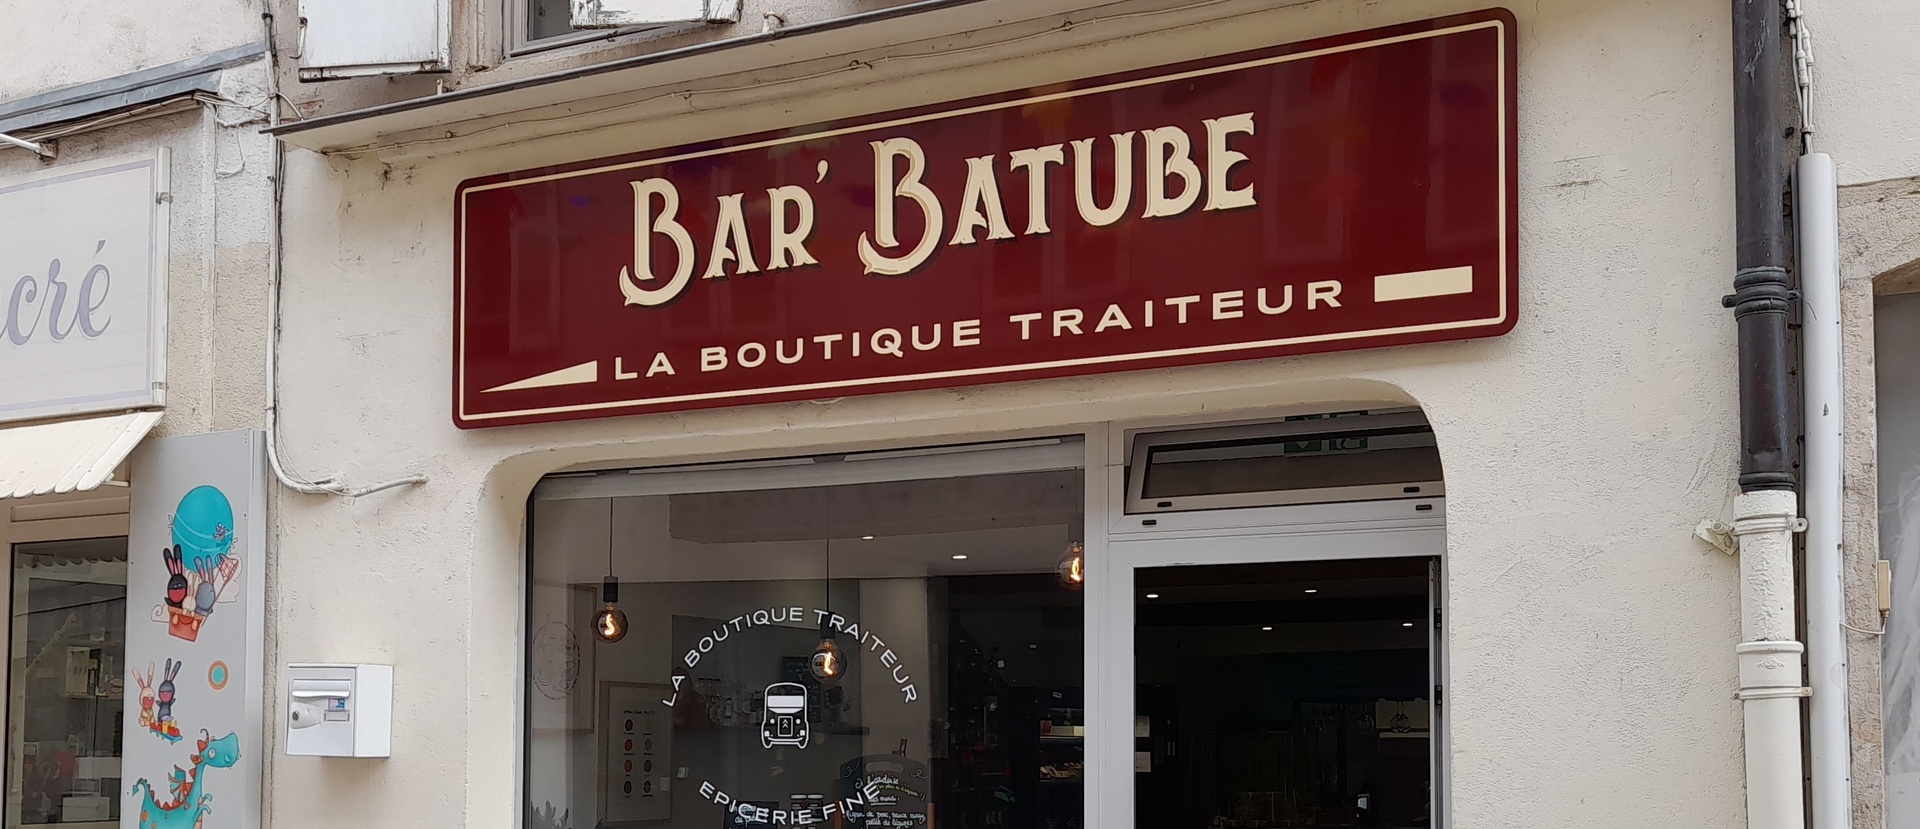 Boutique BAR'BATUBE - Cte-d'Or